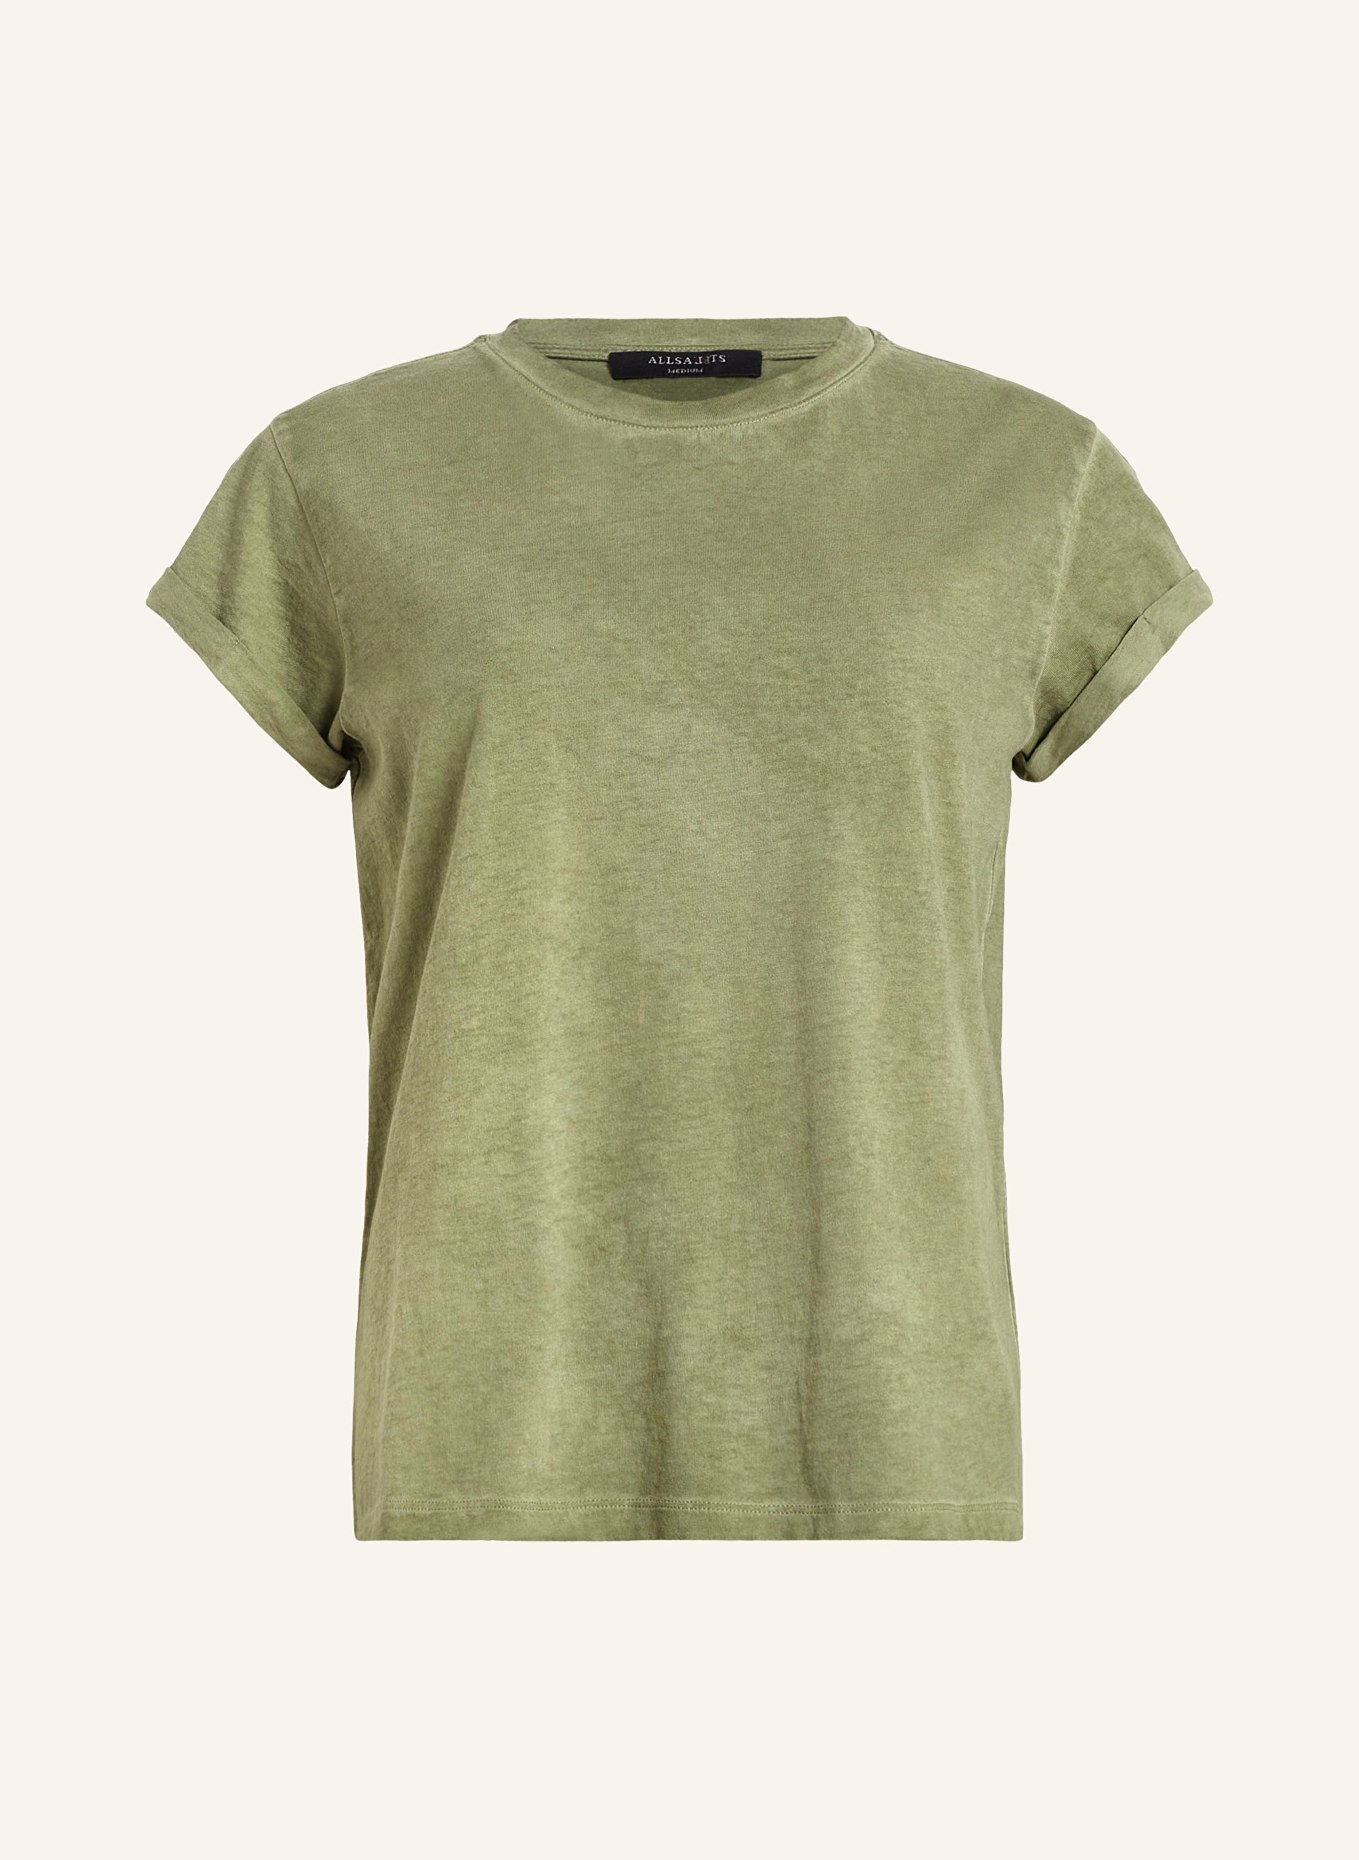 ALLSAINTS T-Shirt ANNA, Farbe: GRÜN (Bild 1)